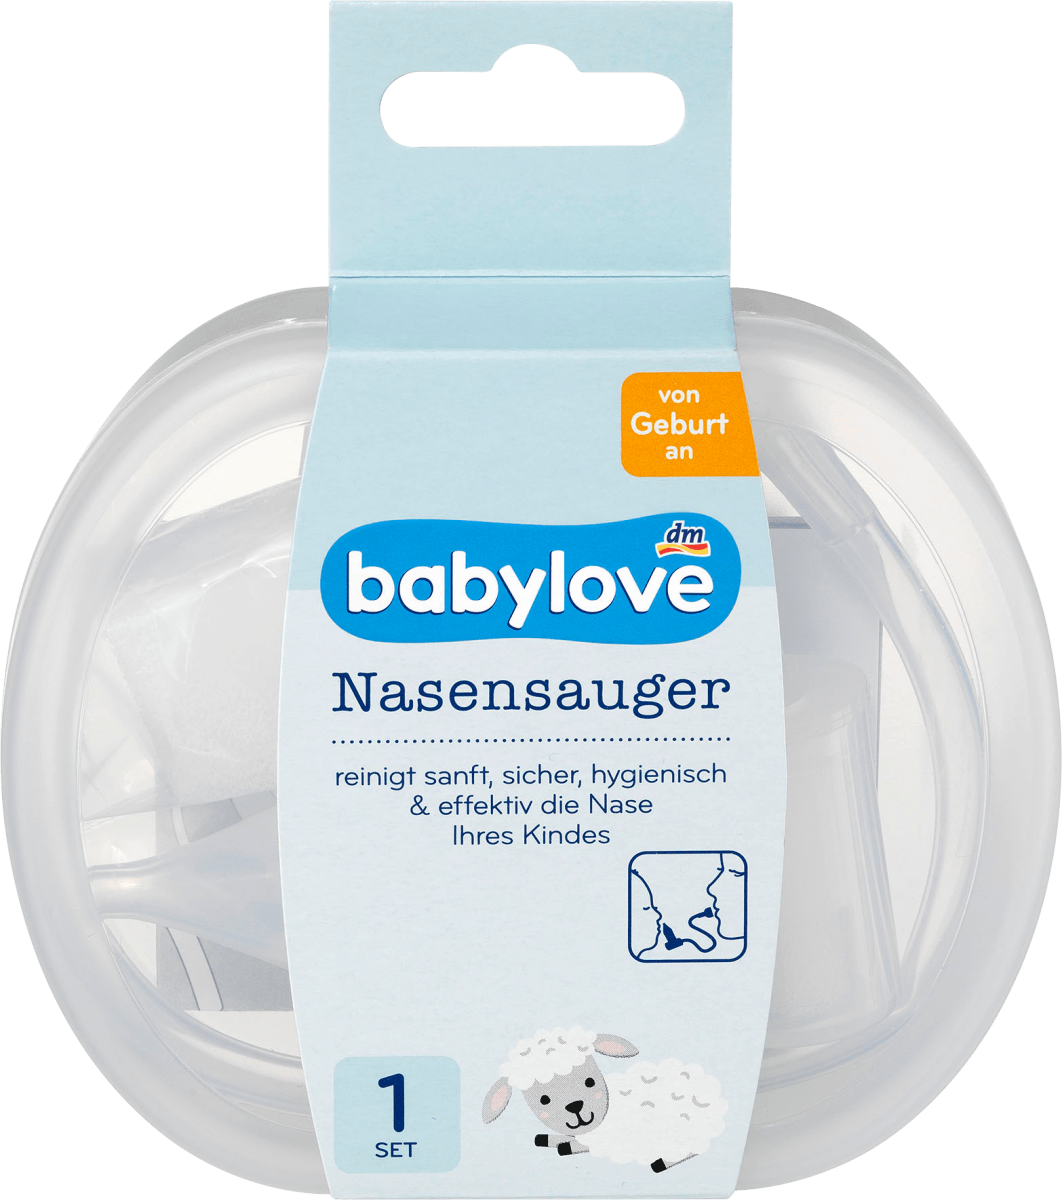 2-in-1 Elektrische Nasensauger Baby Staubsauger Mitesser Reiniger Einstellbar 